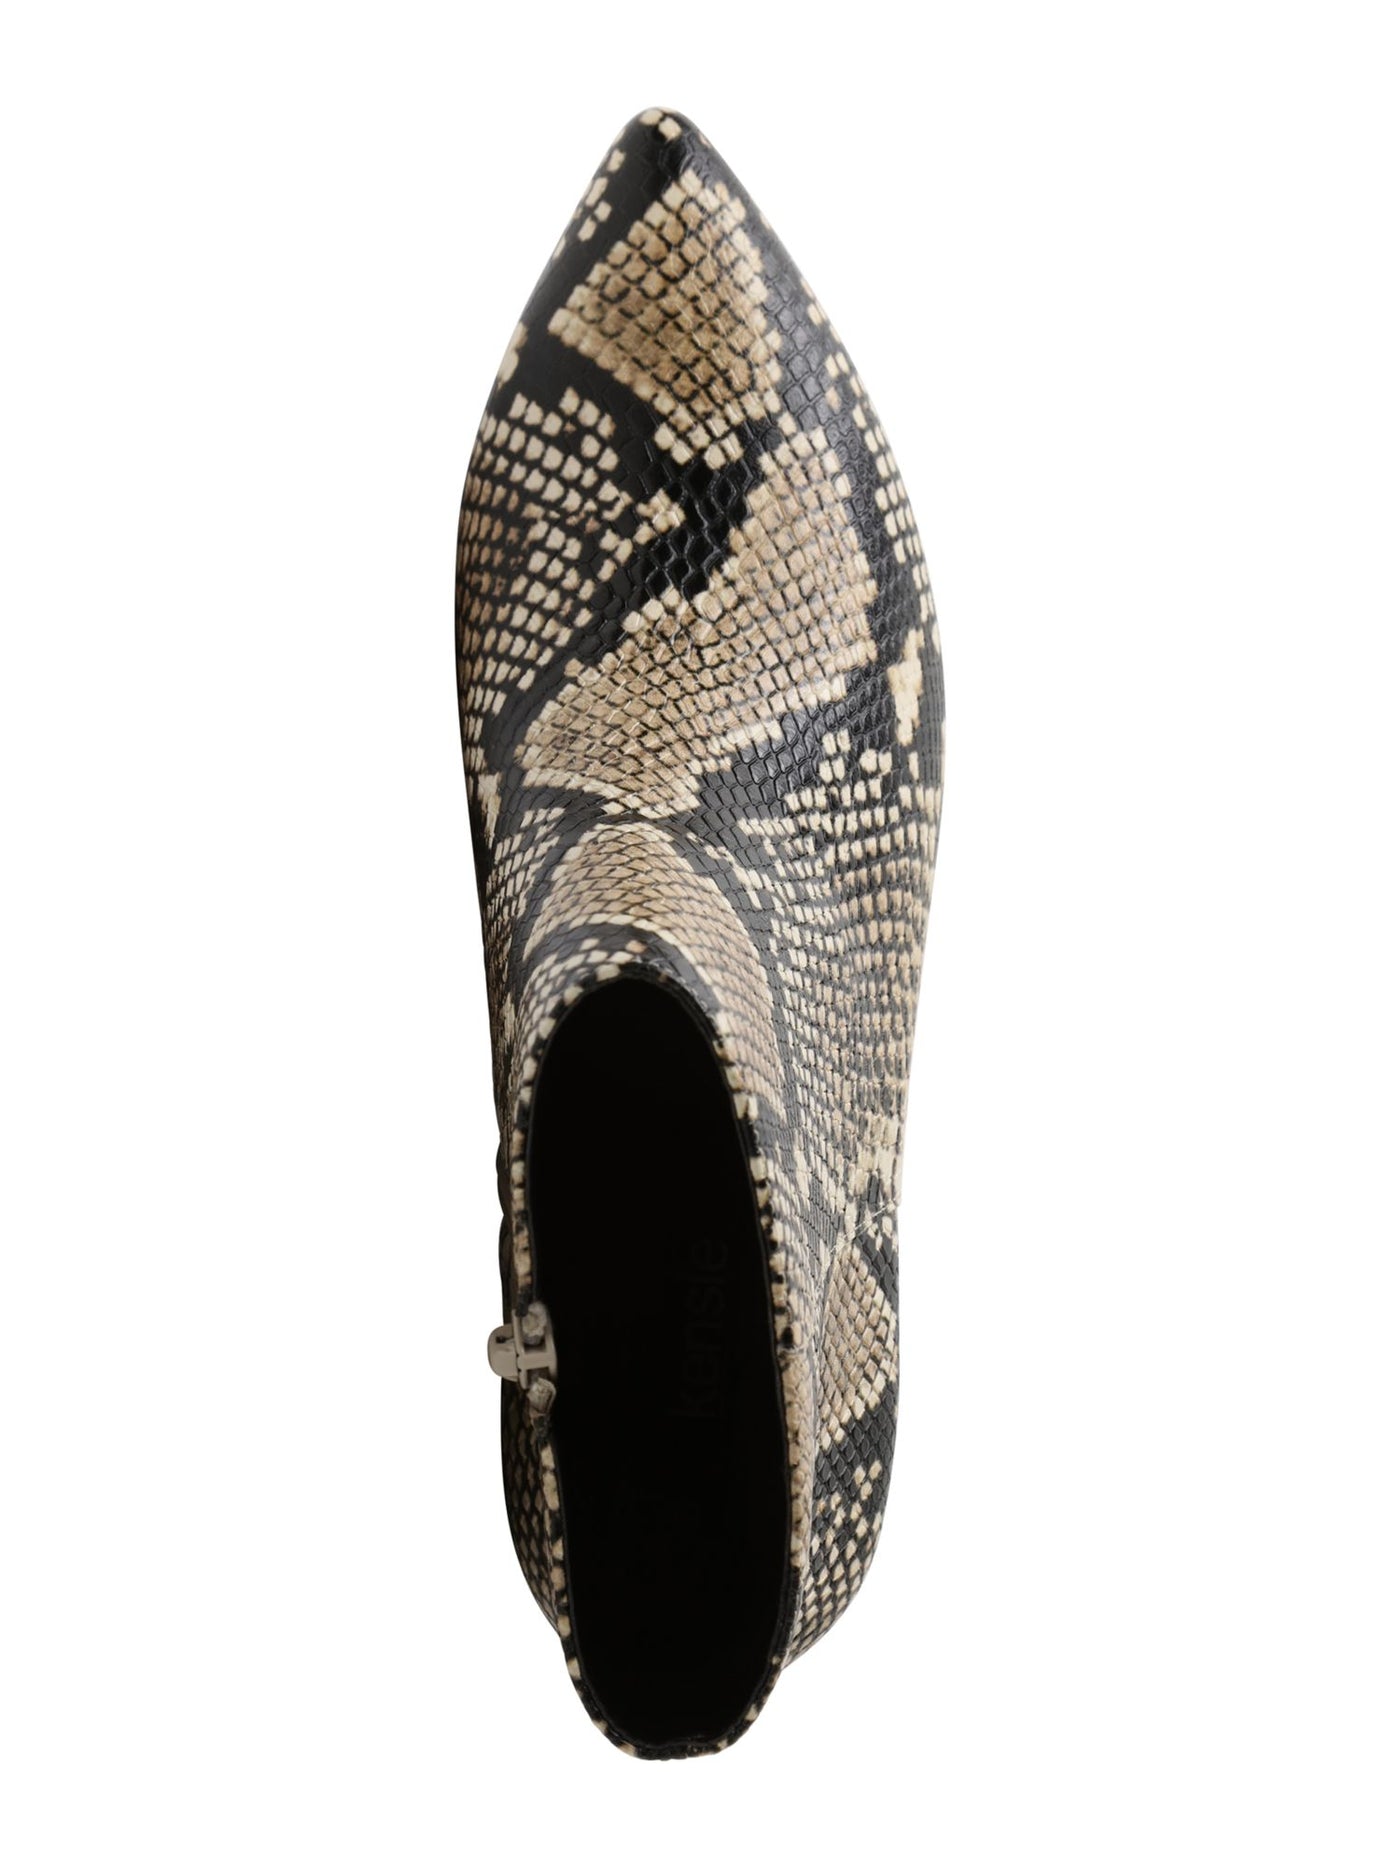 KENSIE Womens Beige Snake Print Angled Heel Comfort Leticia Pointed Toe Stacked Heel Zip-Up Leather Booties 7.5 M